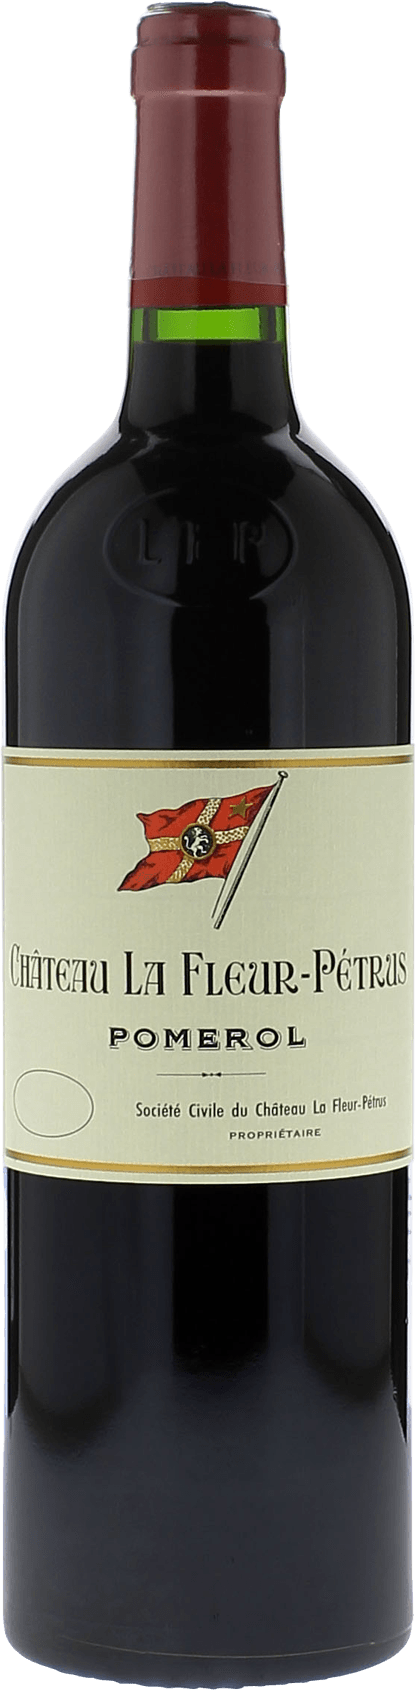 La fleur petrus 2016  Pomerol, Bordeaux rouge